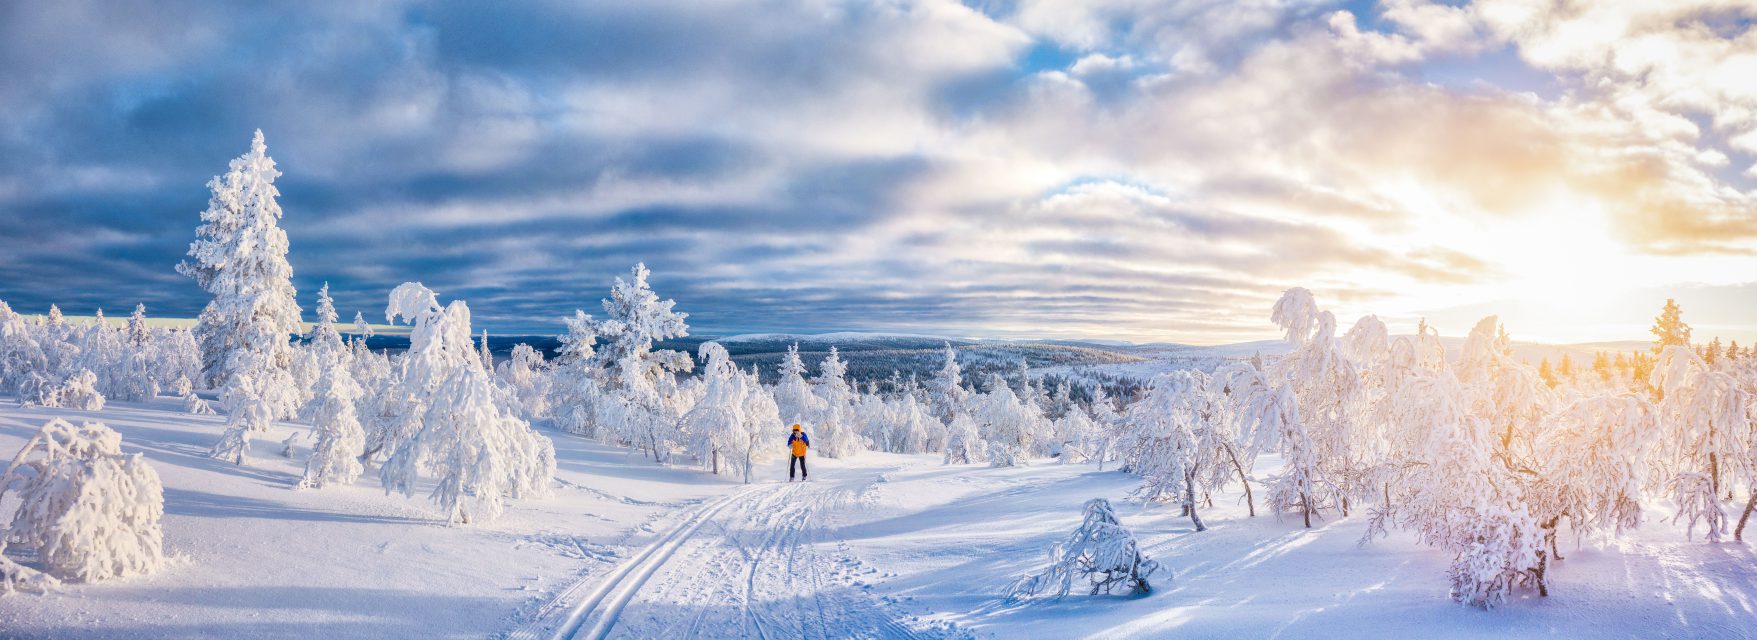 Sunweb breidt aanbod uit met winter in Scandinavië en zon in Verenigde Arabische Emiraten